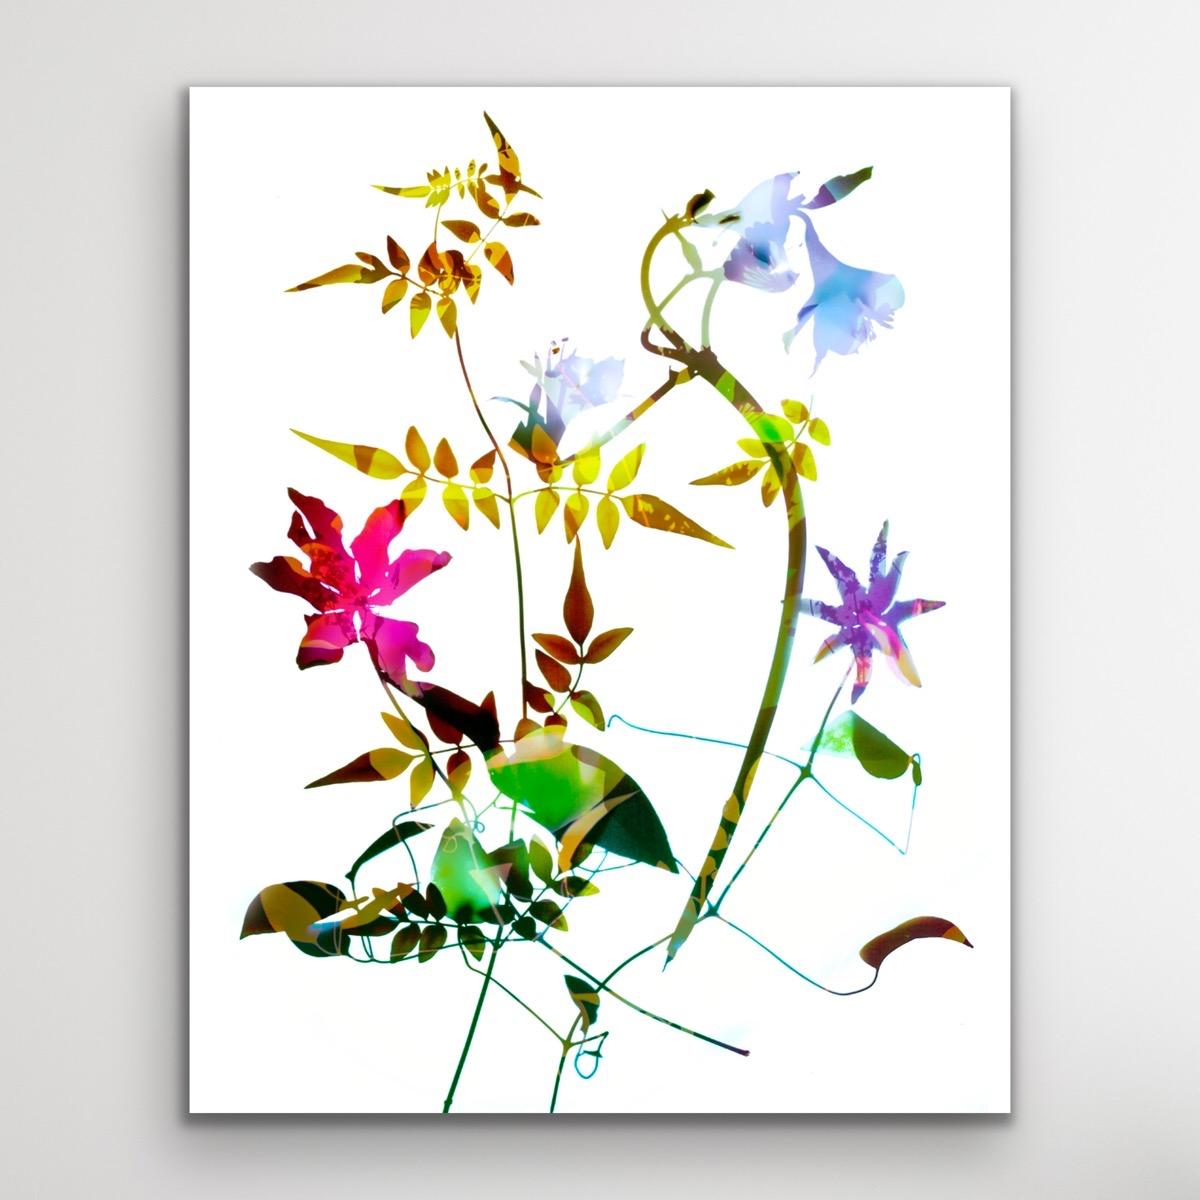 Gentle Spirit No 12, Floral Statement Art, Light Bright Contemporary Art - Beige Still-Life Print by Allan Forsyth